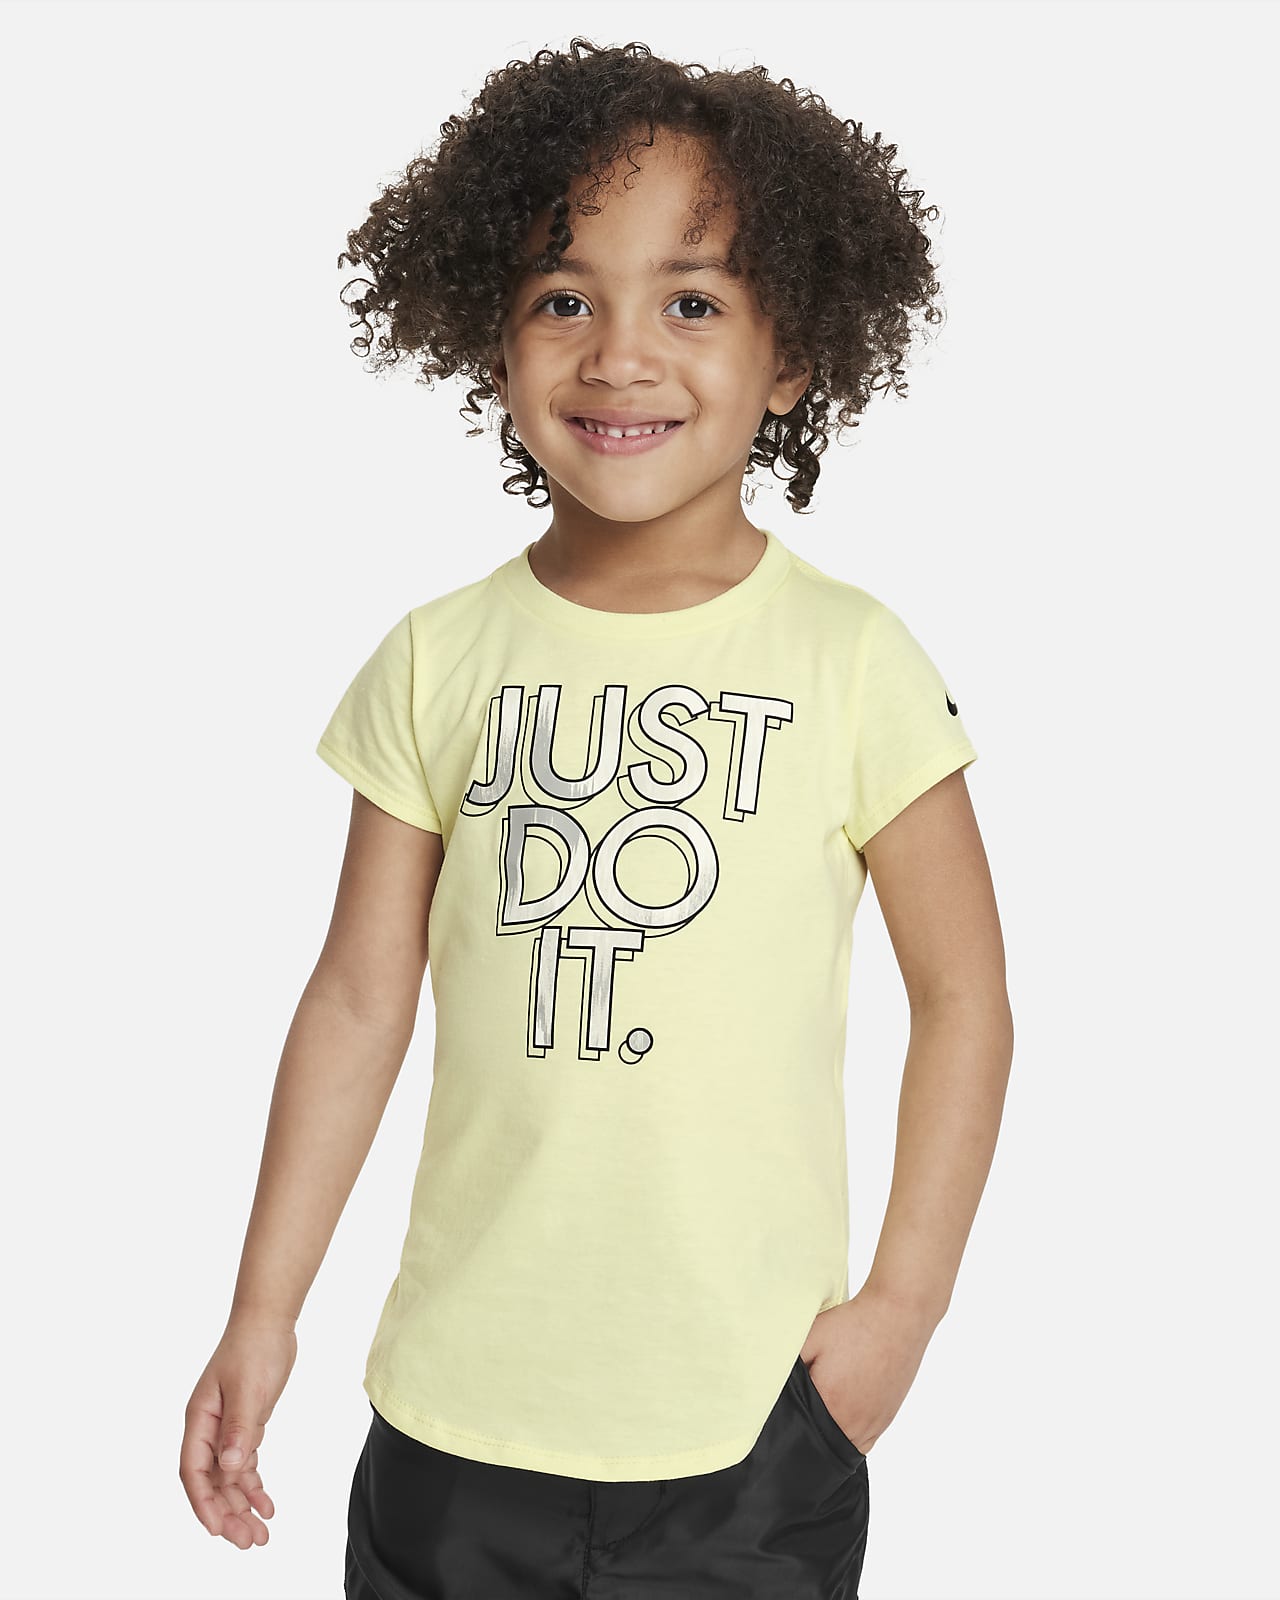 Playera para niños pequeños (playera Nike Digi Dye "Just Do It")